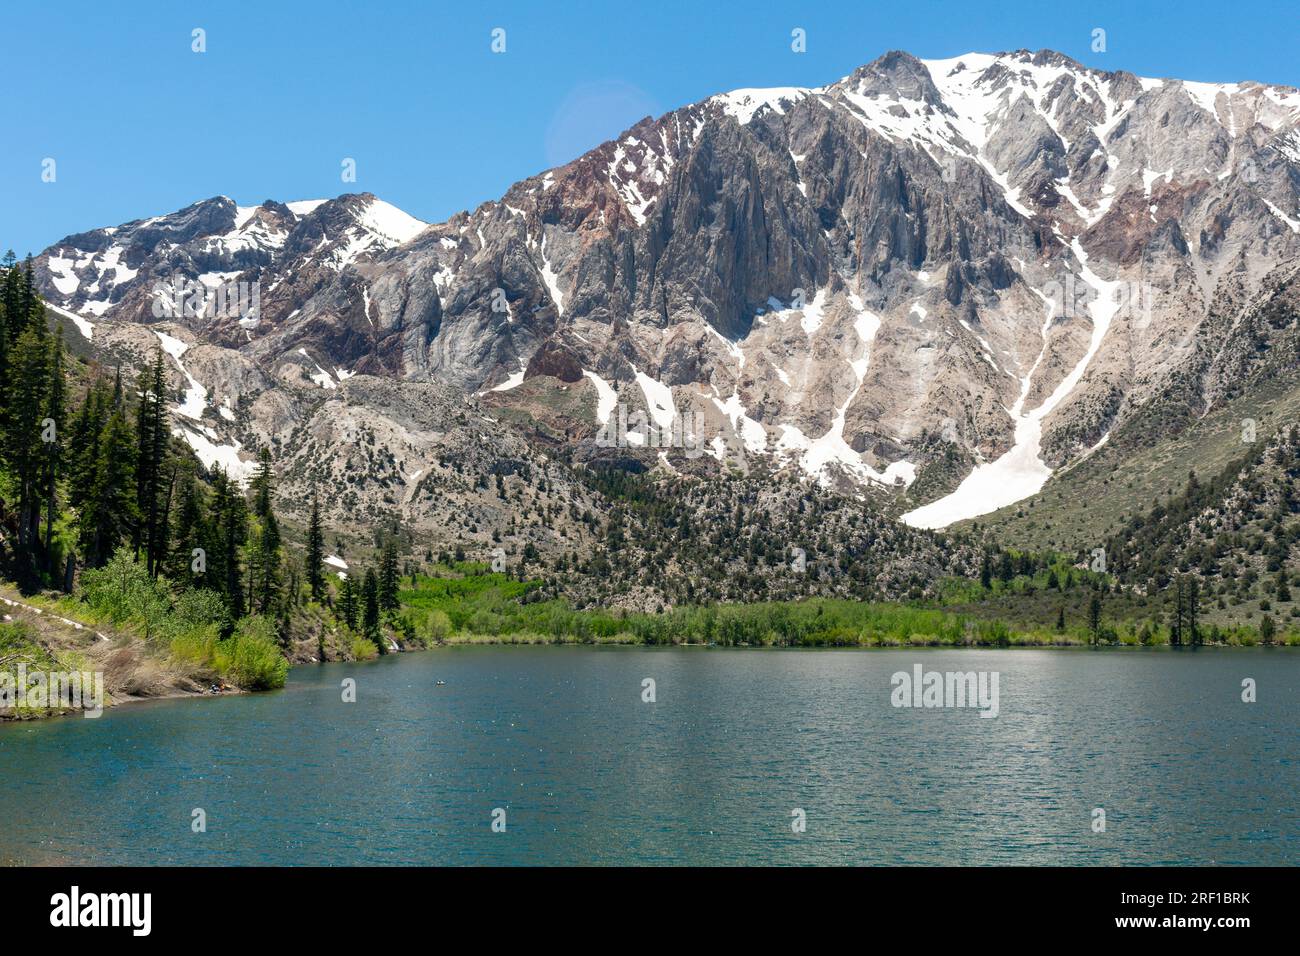 La tranquilla bellezza del lago Convict nelle alte Sierras Foto Stock